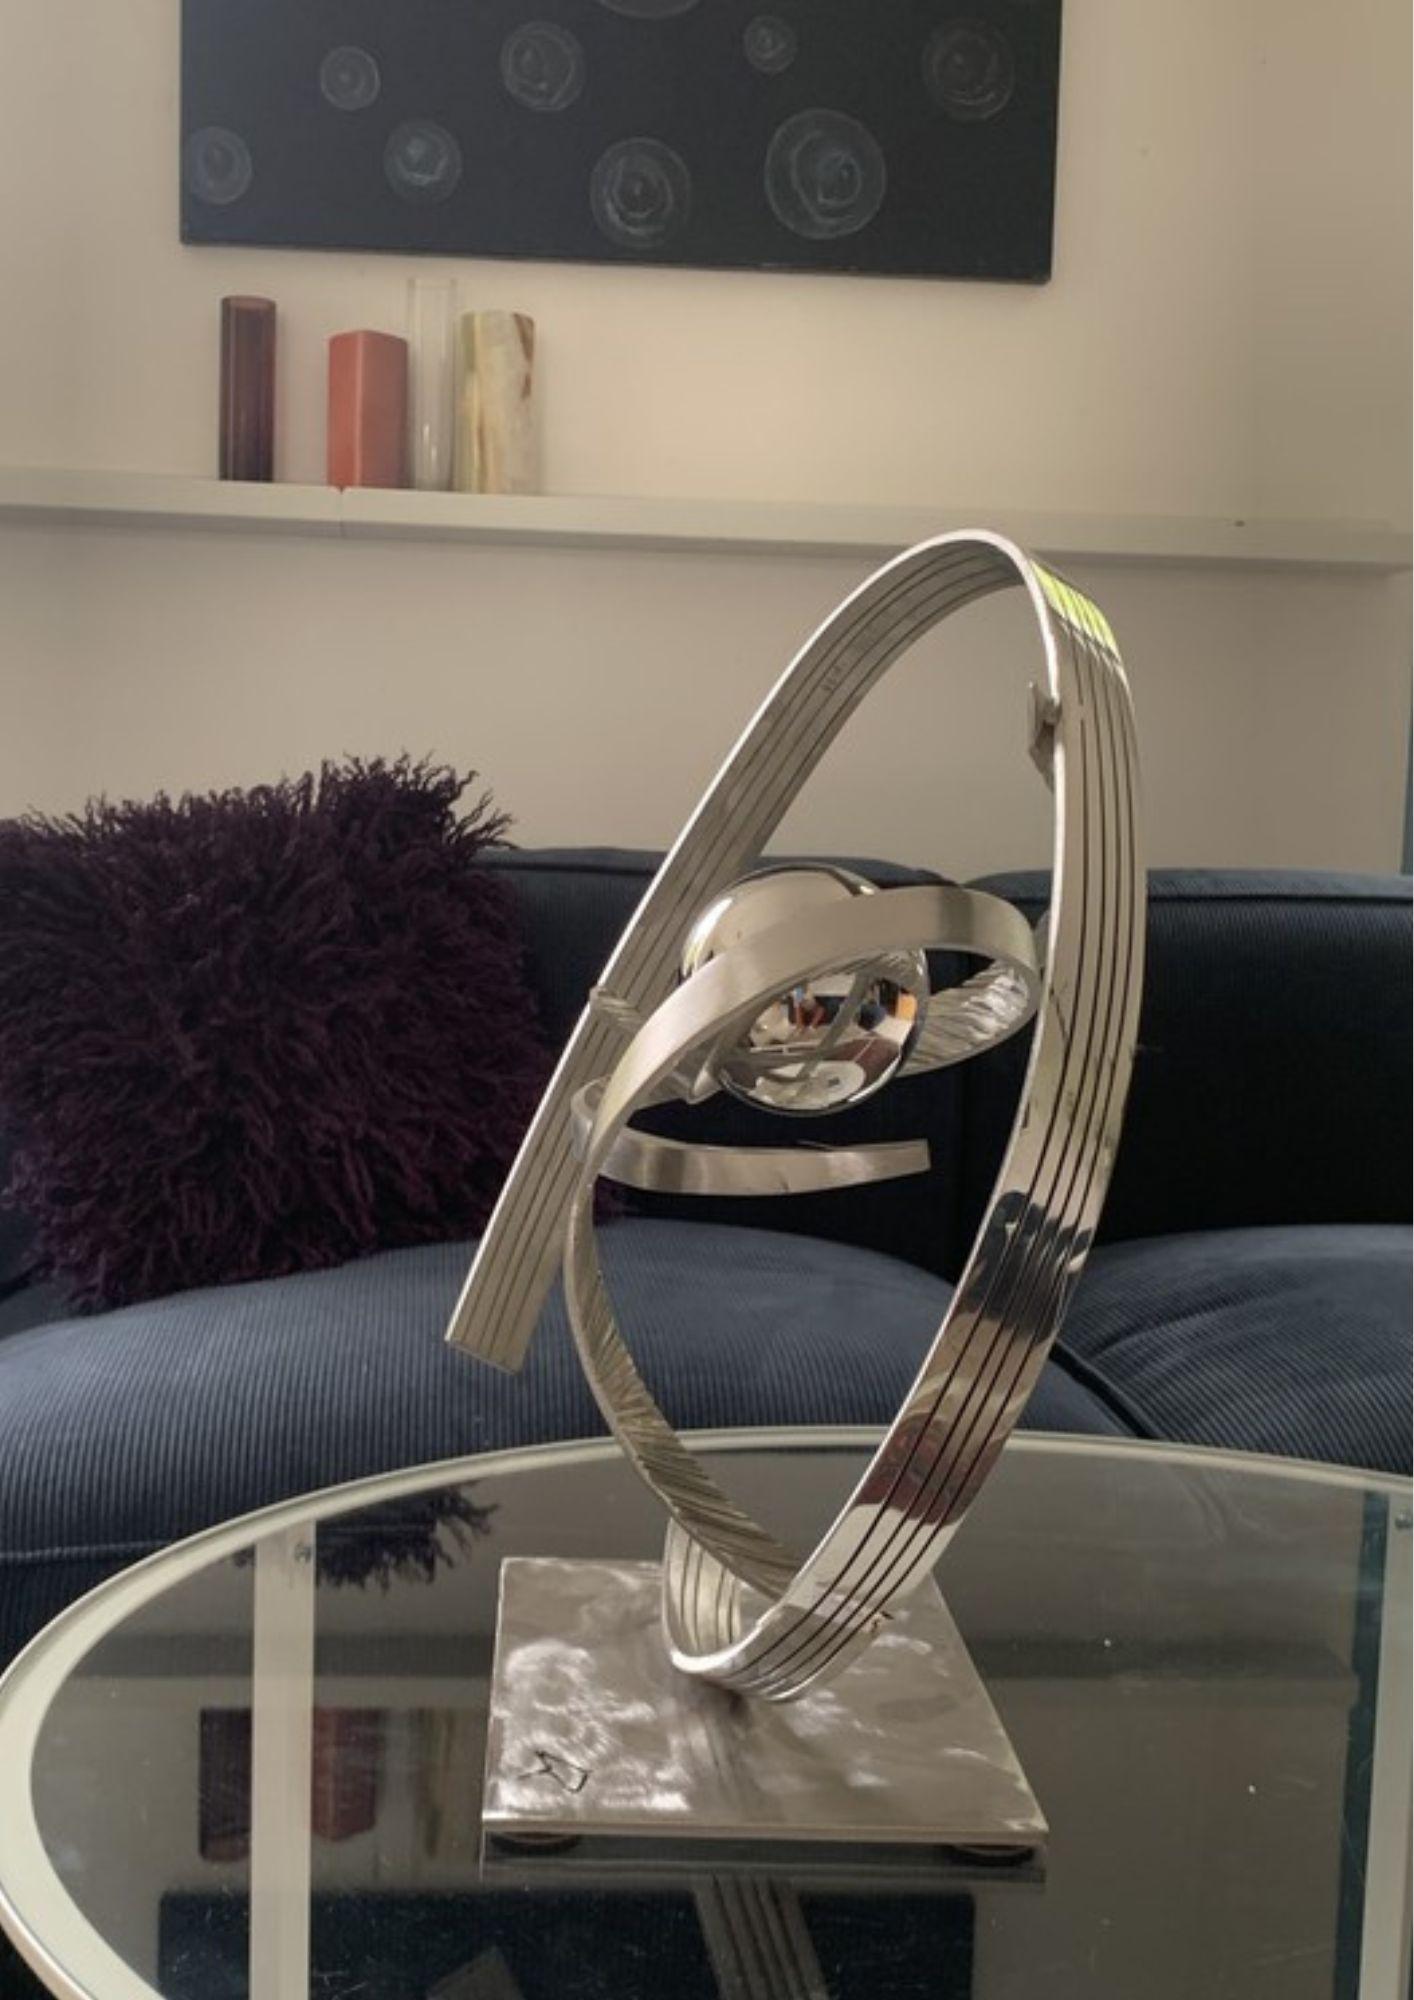 La sculpture Atomos 9 est une œuvre en acier inoxydable qui capture l'essence de la matière et de l'énergie. Avec ses courbes fines et légères, elle explore les notions d'équilibre et de mouvement dans un espace où se rencontrent réalité et